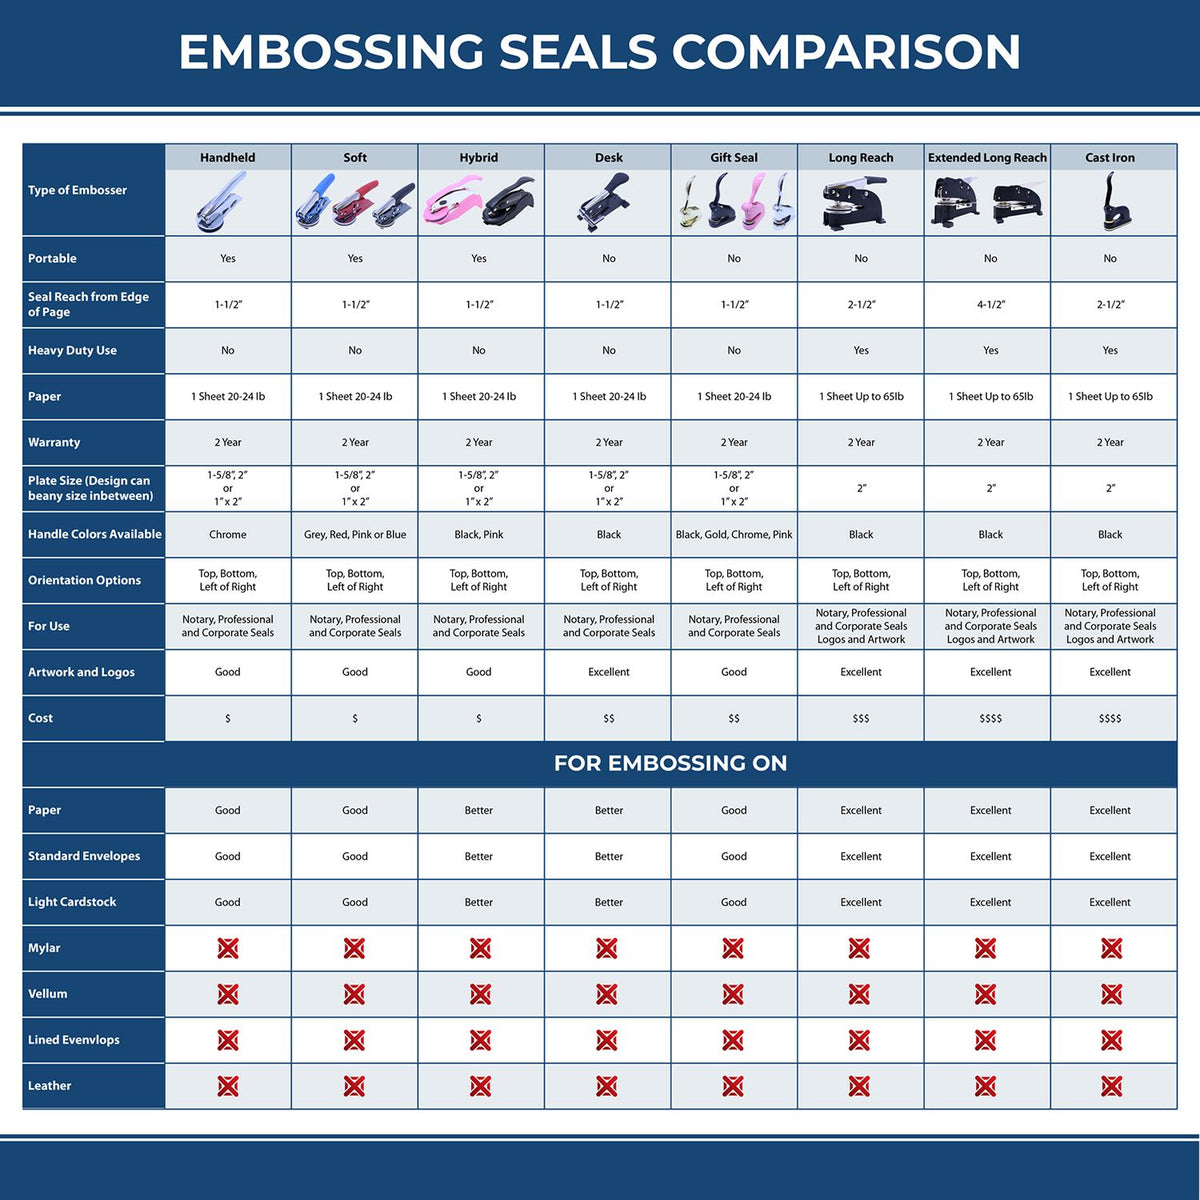 Real Estate Appraiser Desk Seal Embosser 3002REA Embossing Seal Comparison